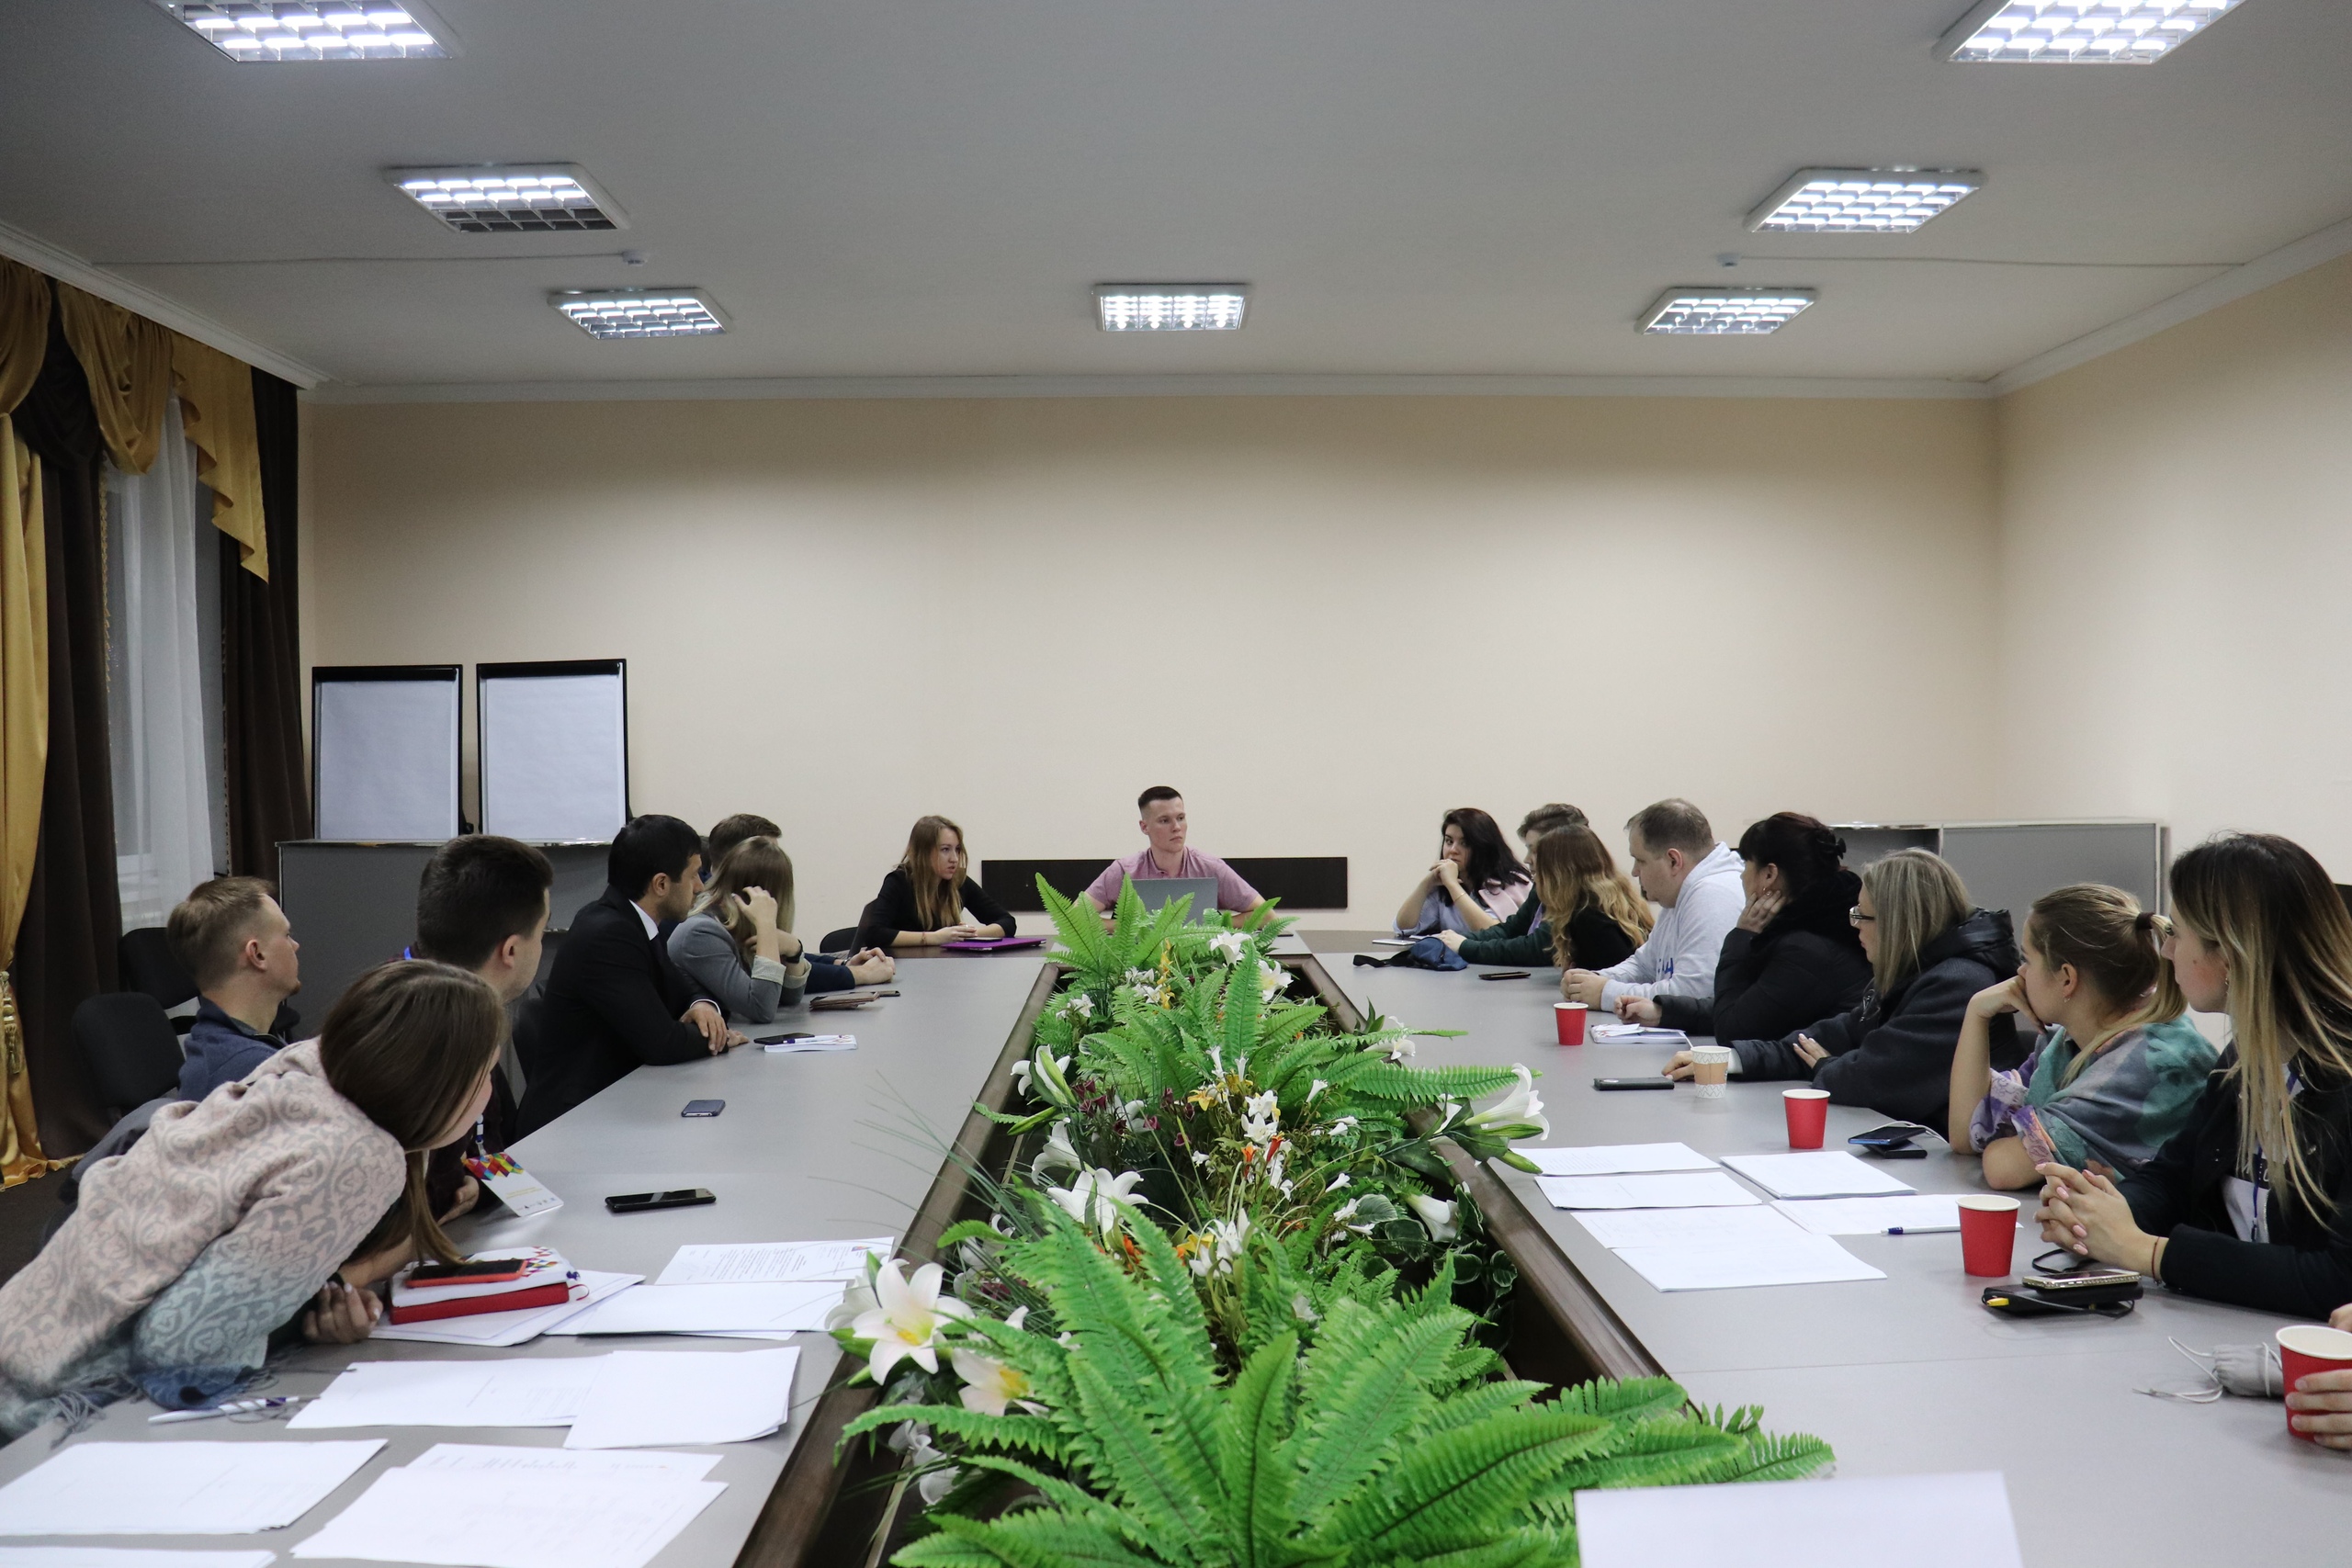 Всероссийский съезд руководителей волонтерских объединений